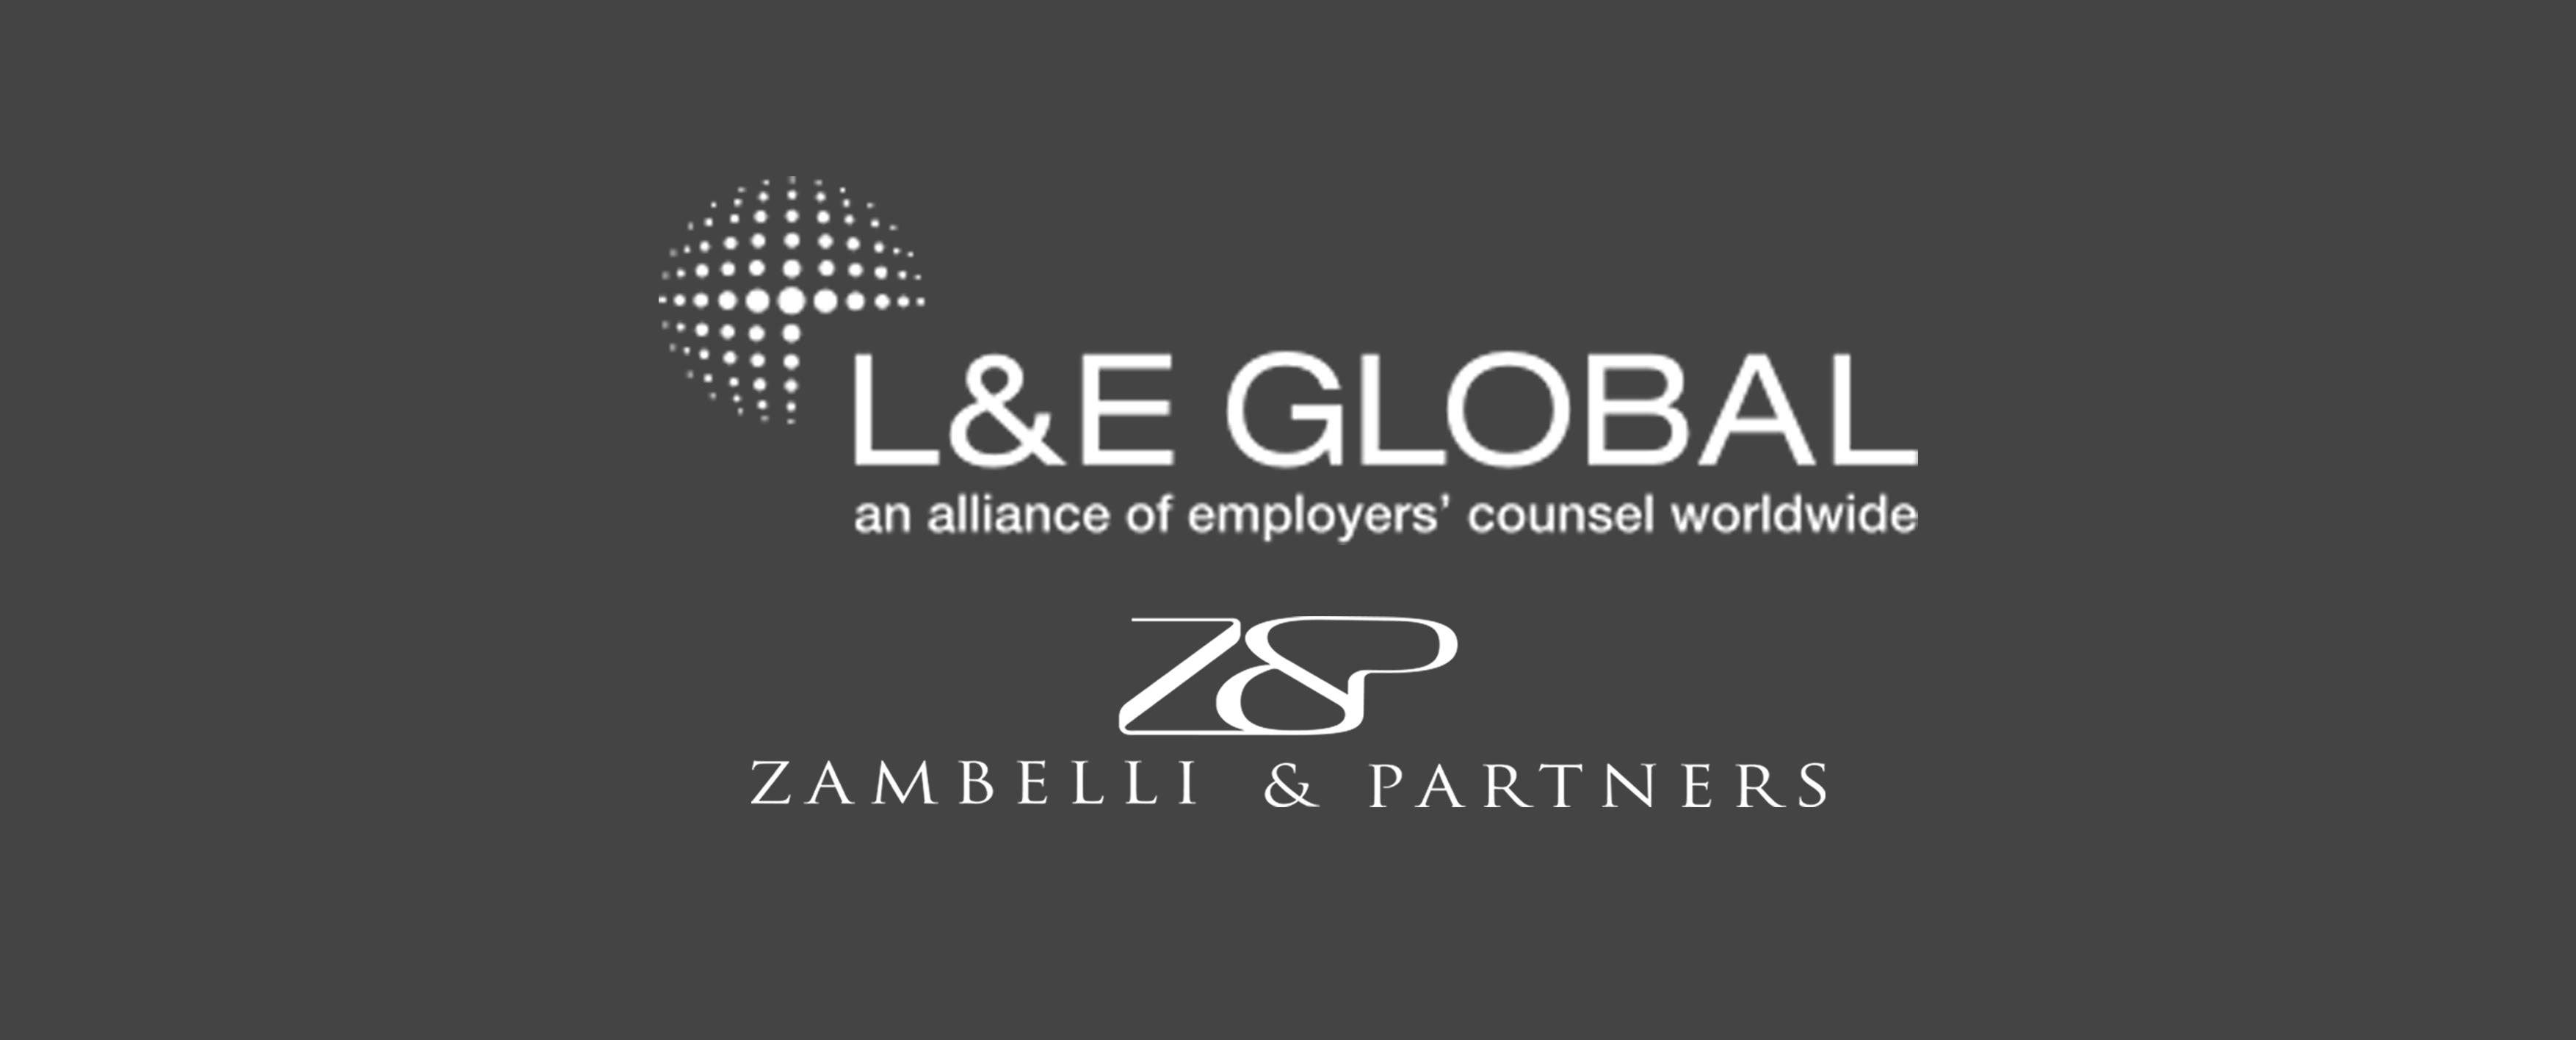 L&E Global webinars